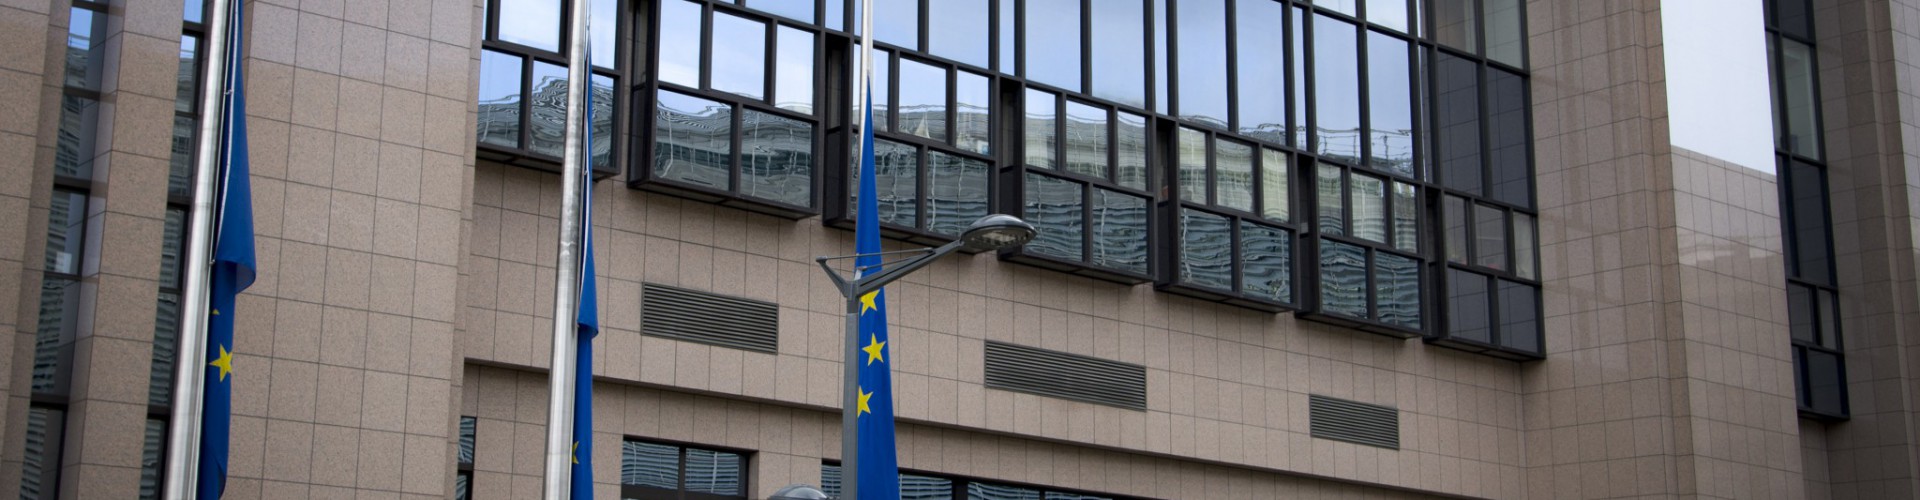 Europas Politiker verurteilen die feigen Anschläge in Brüssel auf’s Schärfste